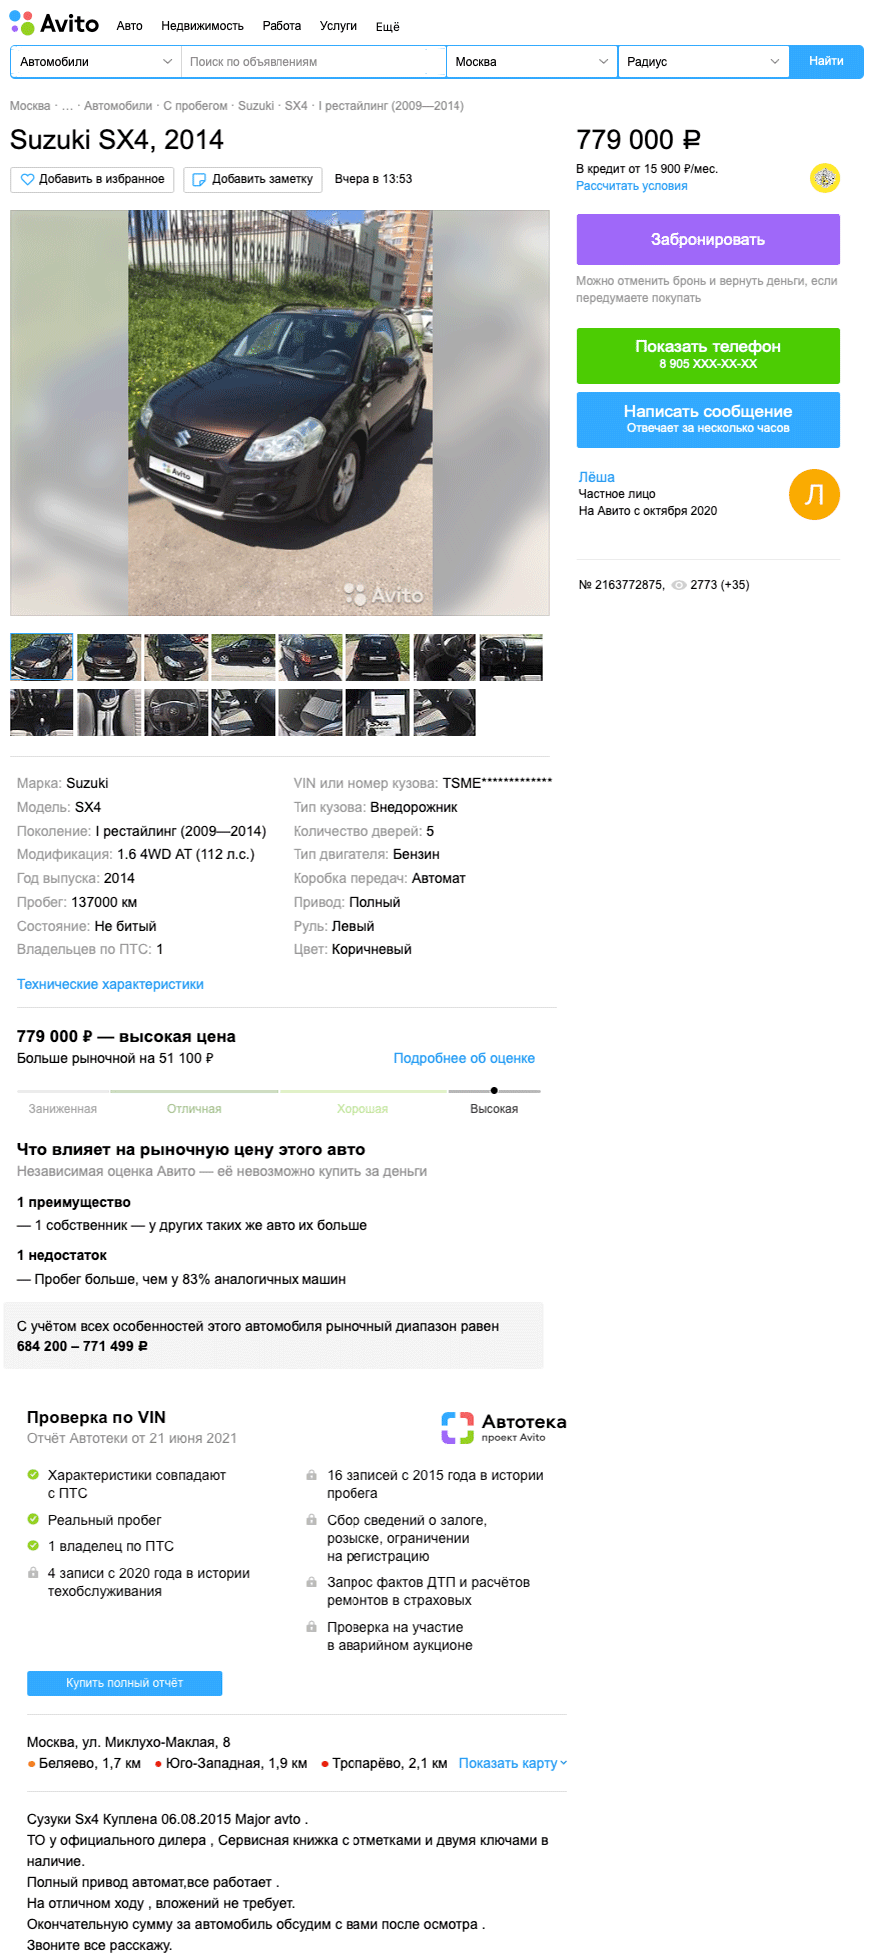 Минимум габаритов, максимум простоты: стоит ли покупать Suzuki SX4 I за 700 тысяч рублей